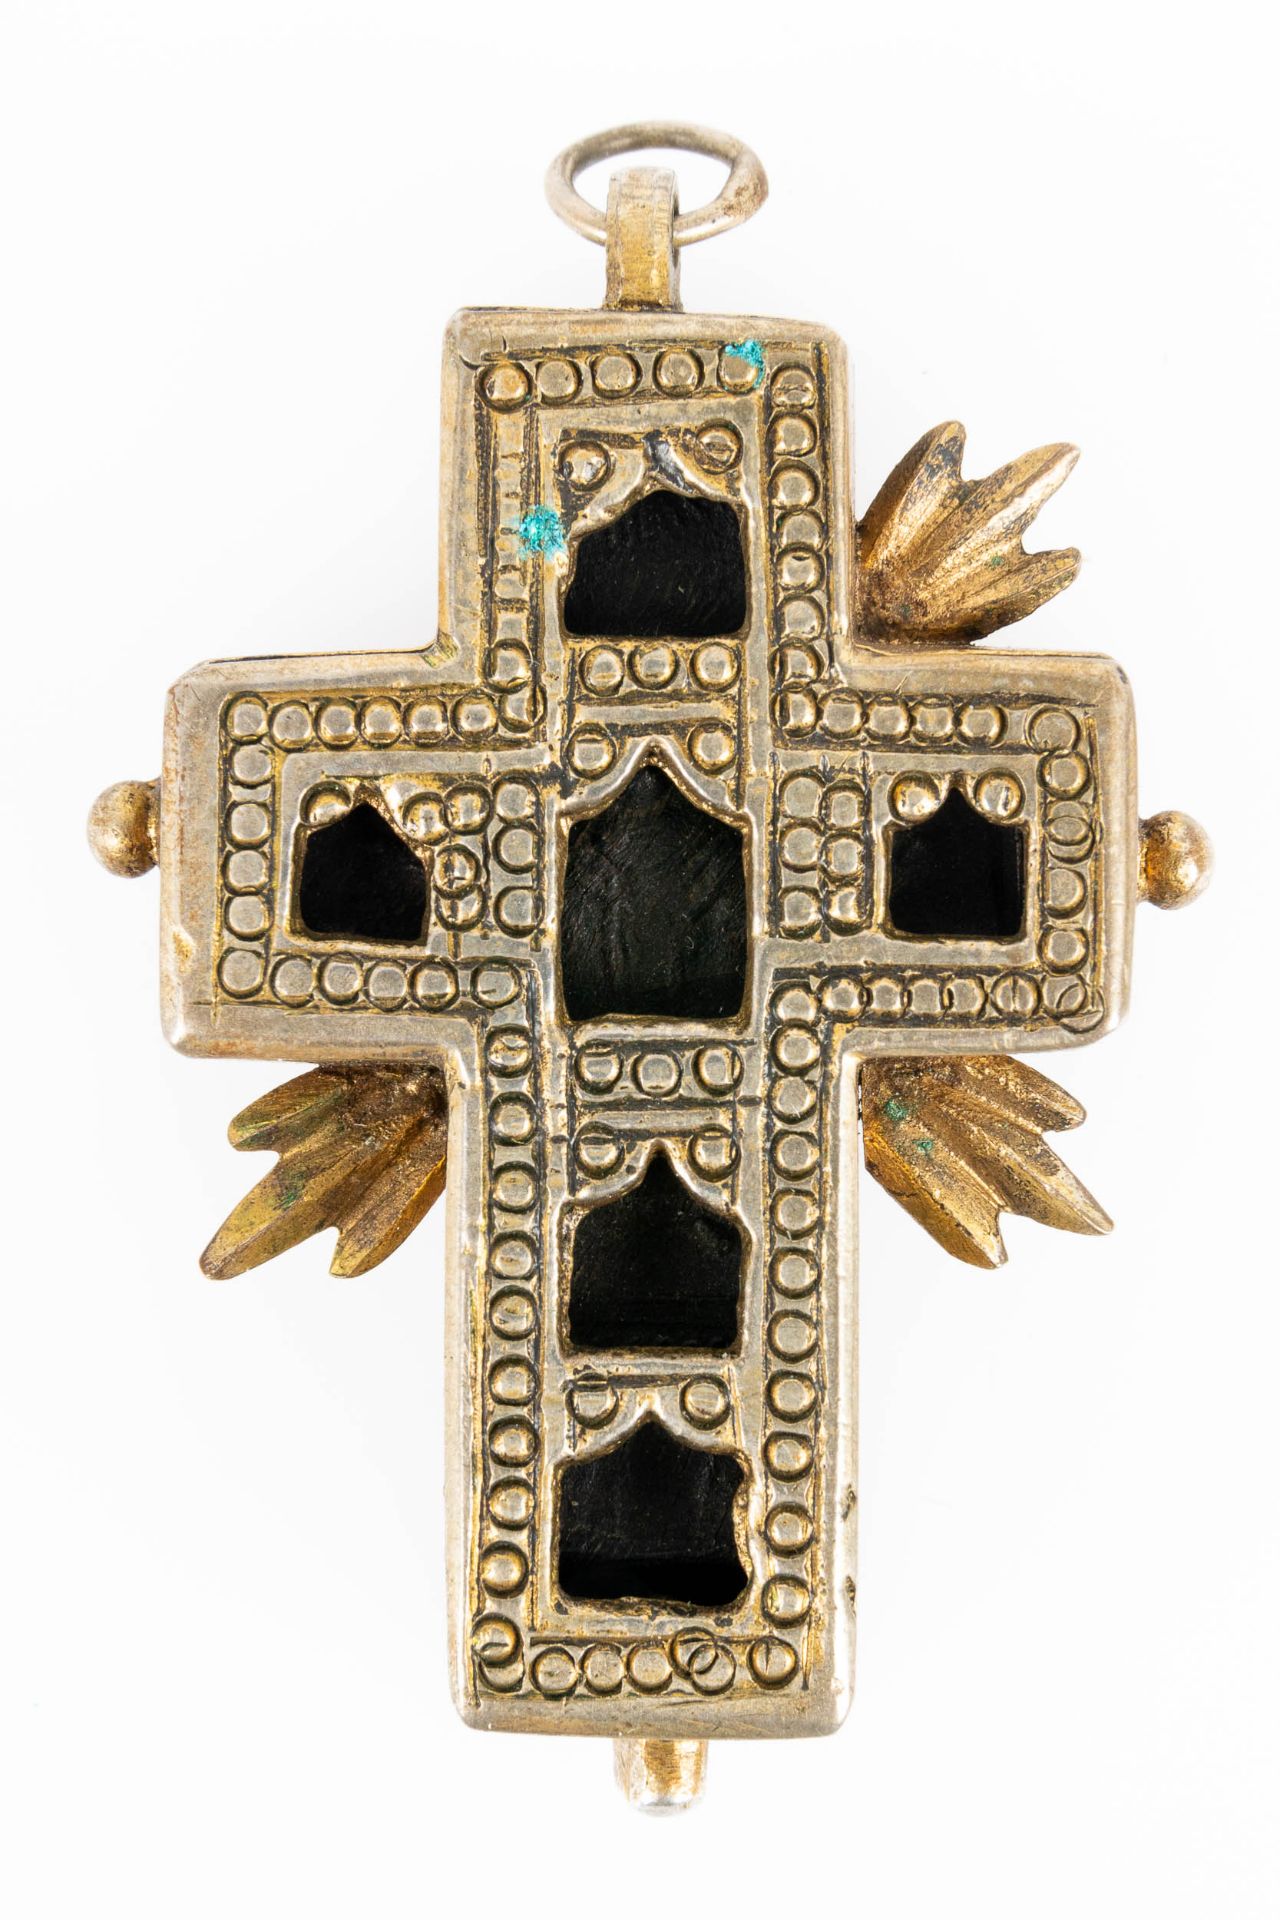 "Kreuz"-Kettenanhänger, zweiteiliger Metallguss mit 3 von 4 erhaltenen Strahlenbündeln, aufschraubb